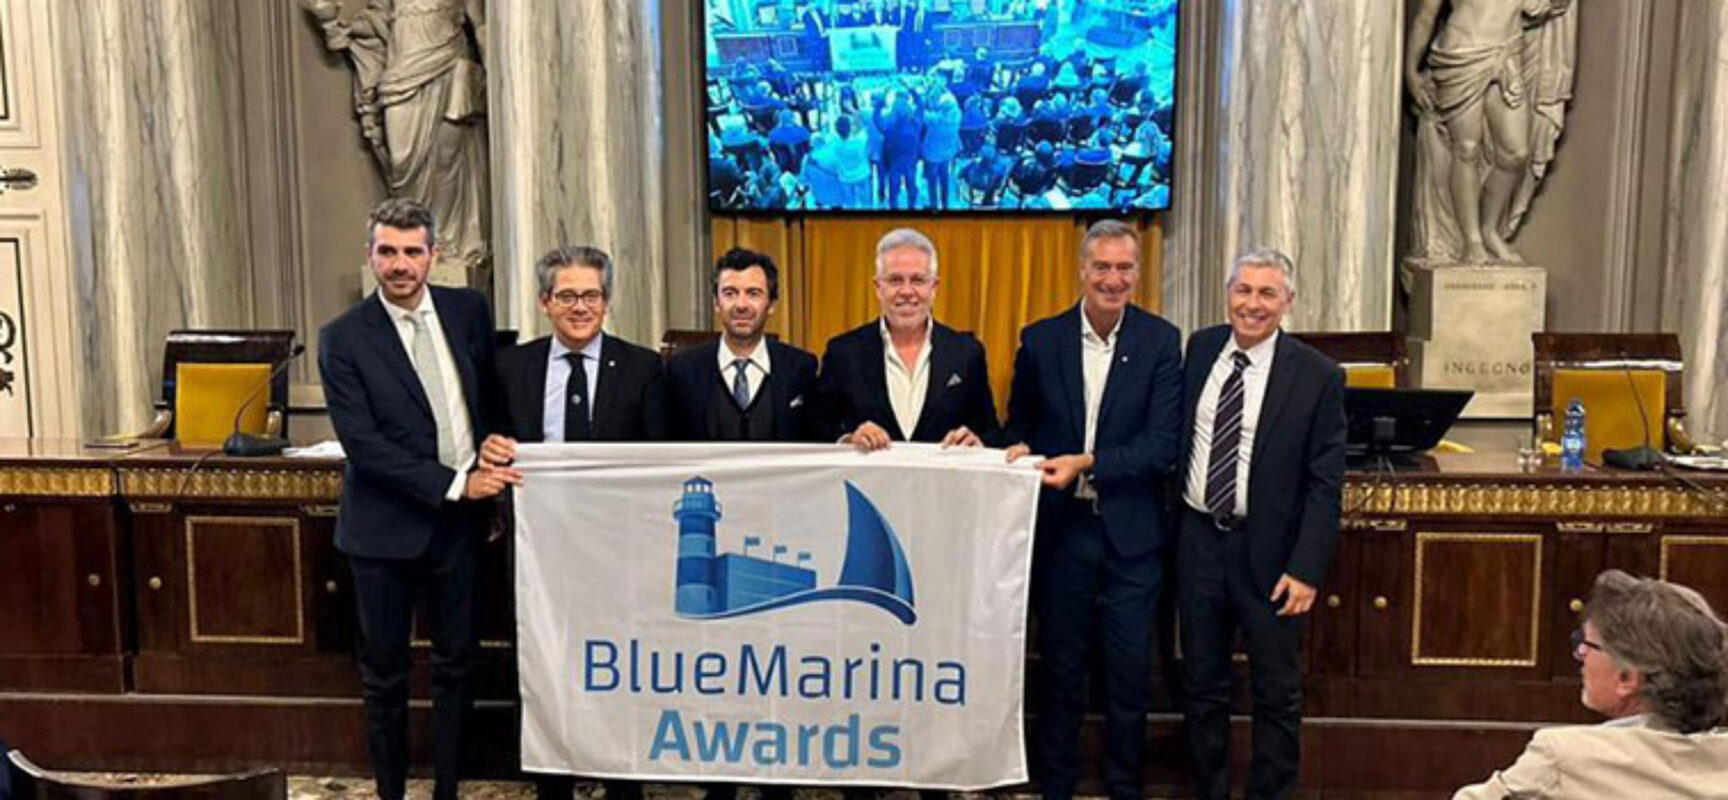 Al porto turistico-marina resort Bisceglie Approdi il Blue Marina Awards di Assonautica